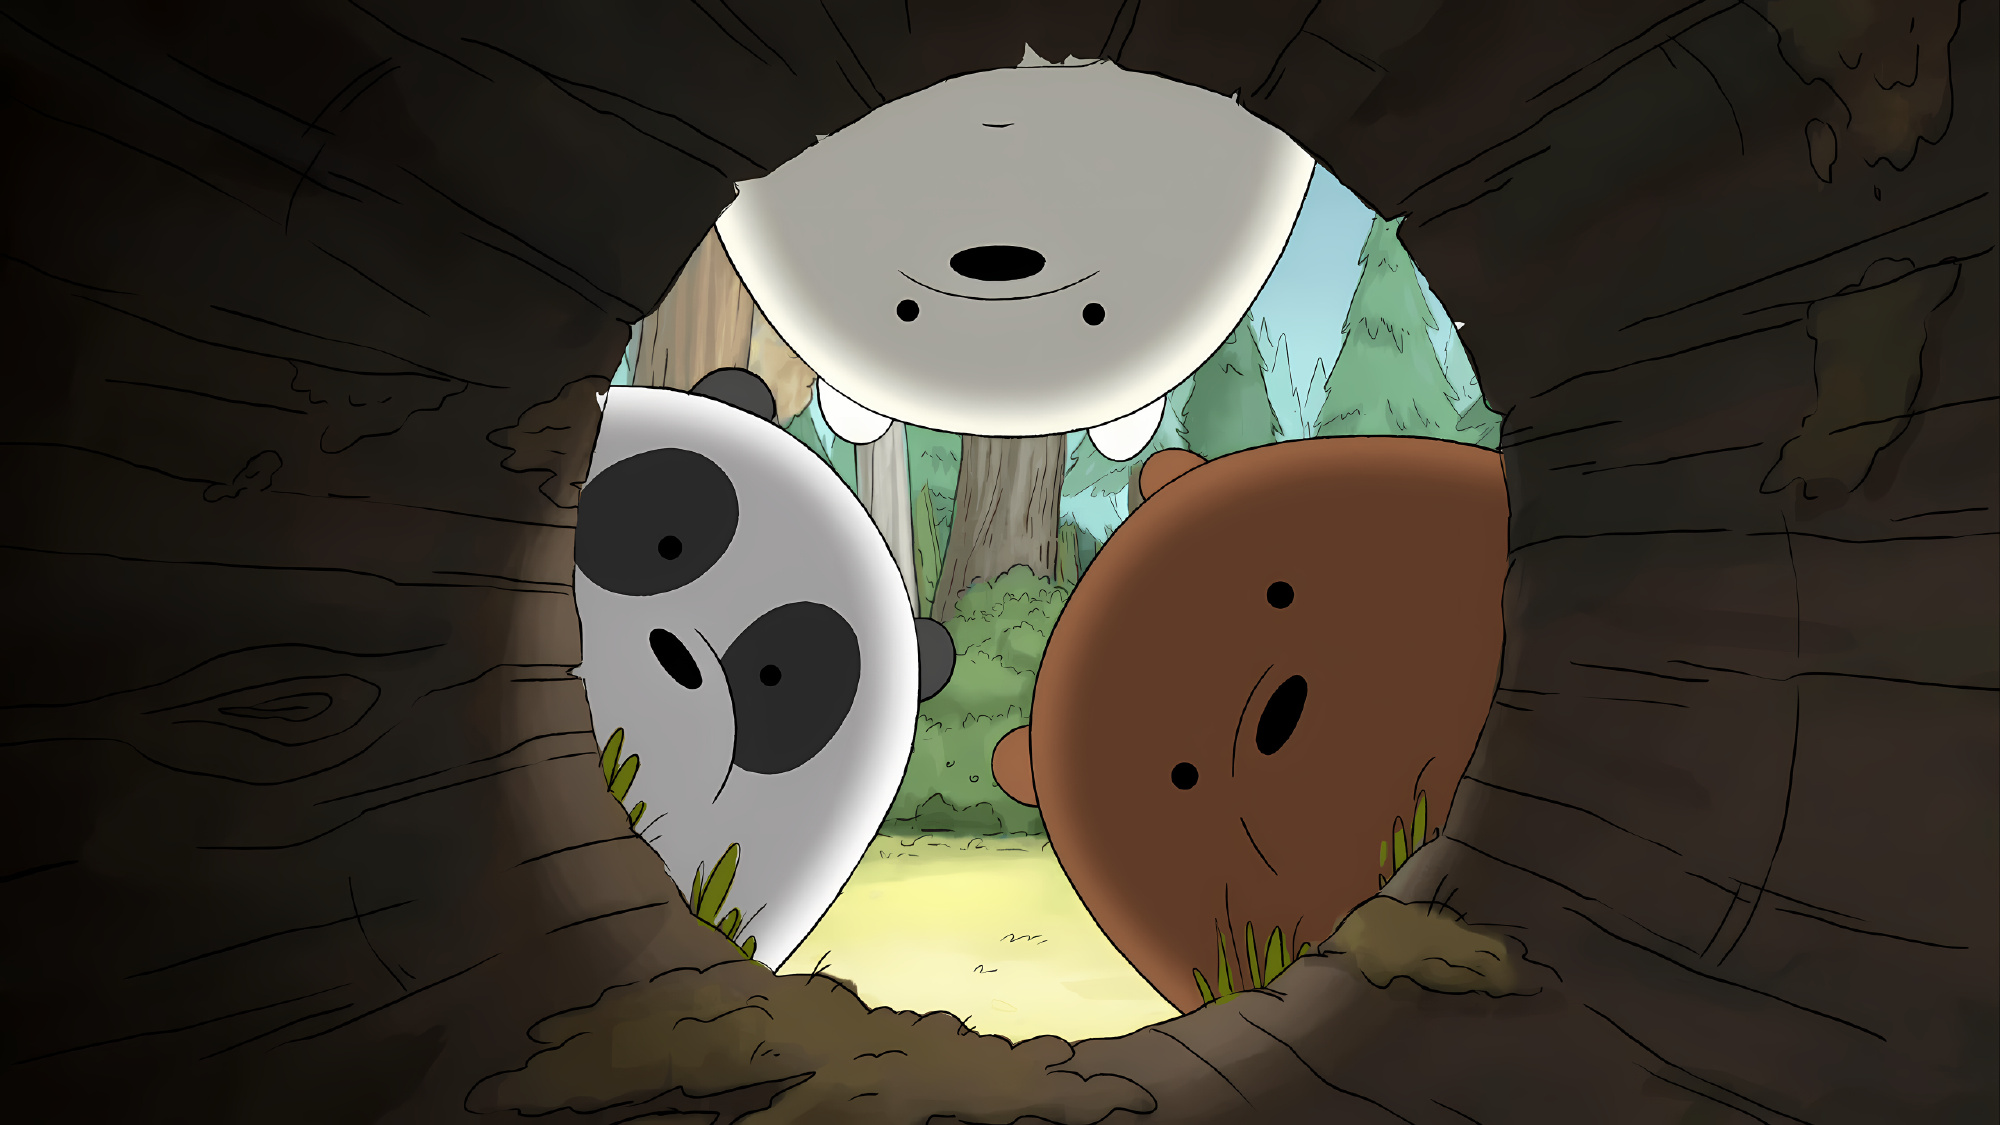 三只熊壁纸动画片图片